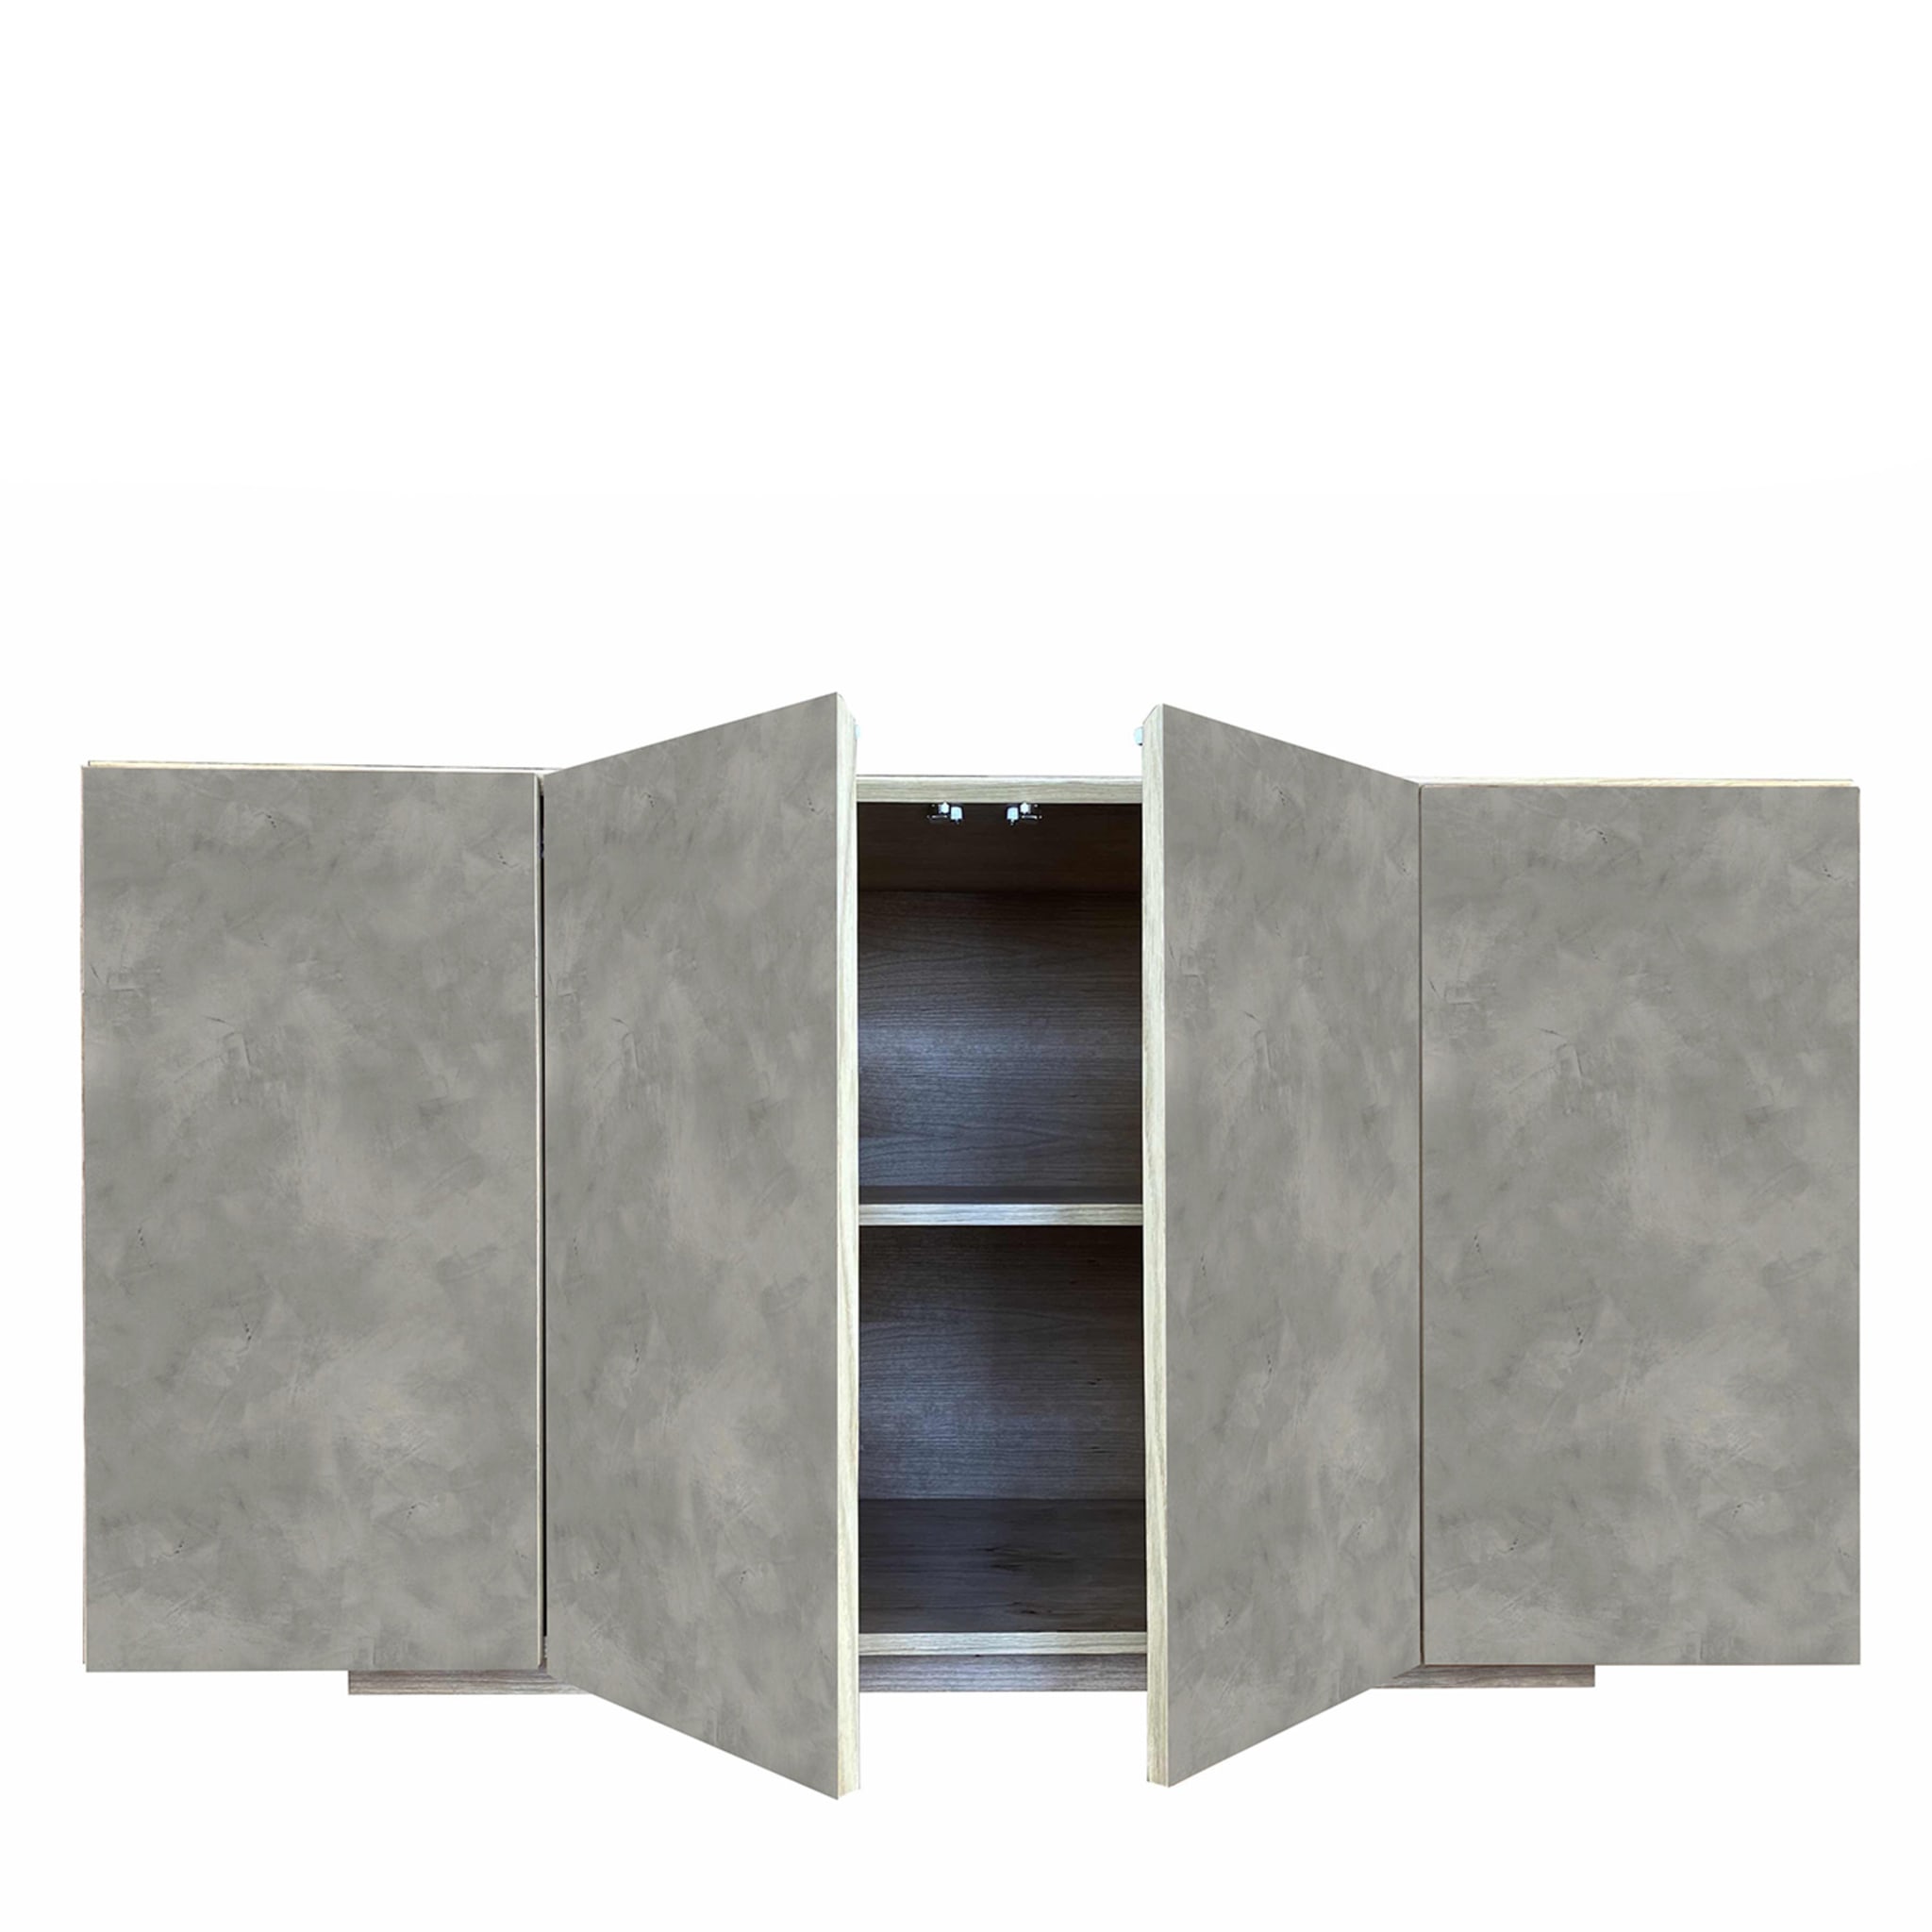 Boccadarno Otto 4-Door Gray Sideboard by Meccani Studio - Alternative view 5